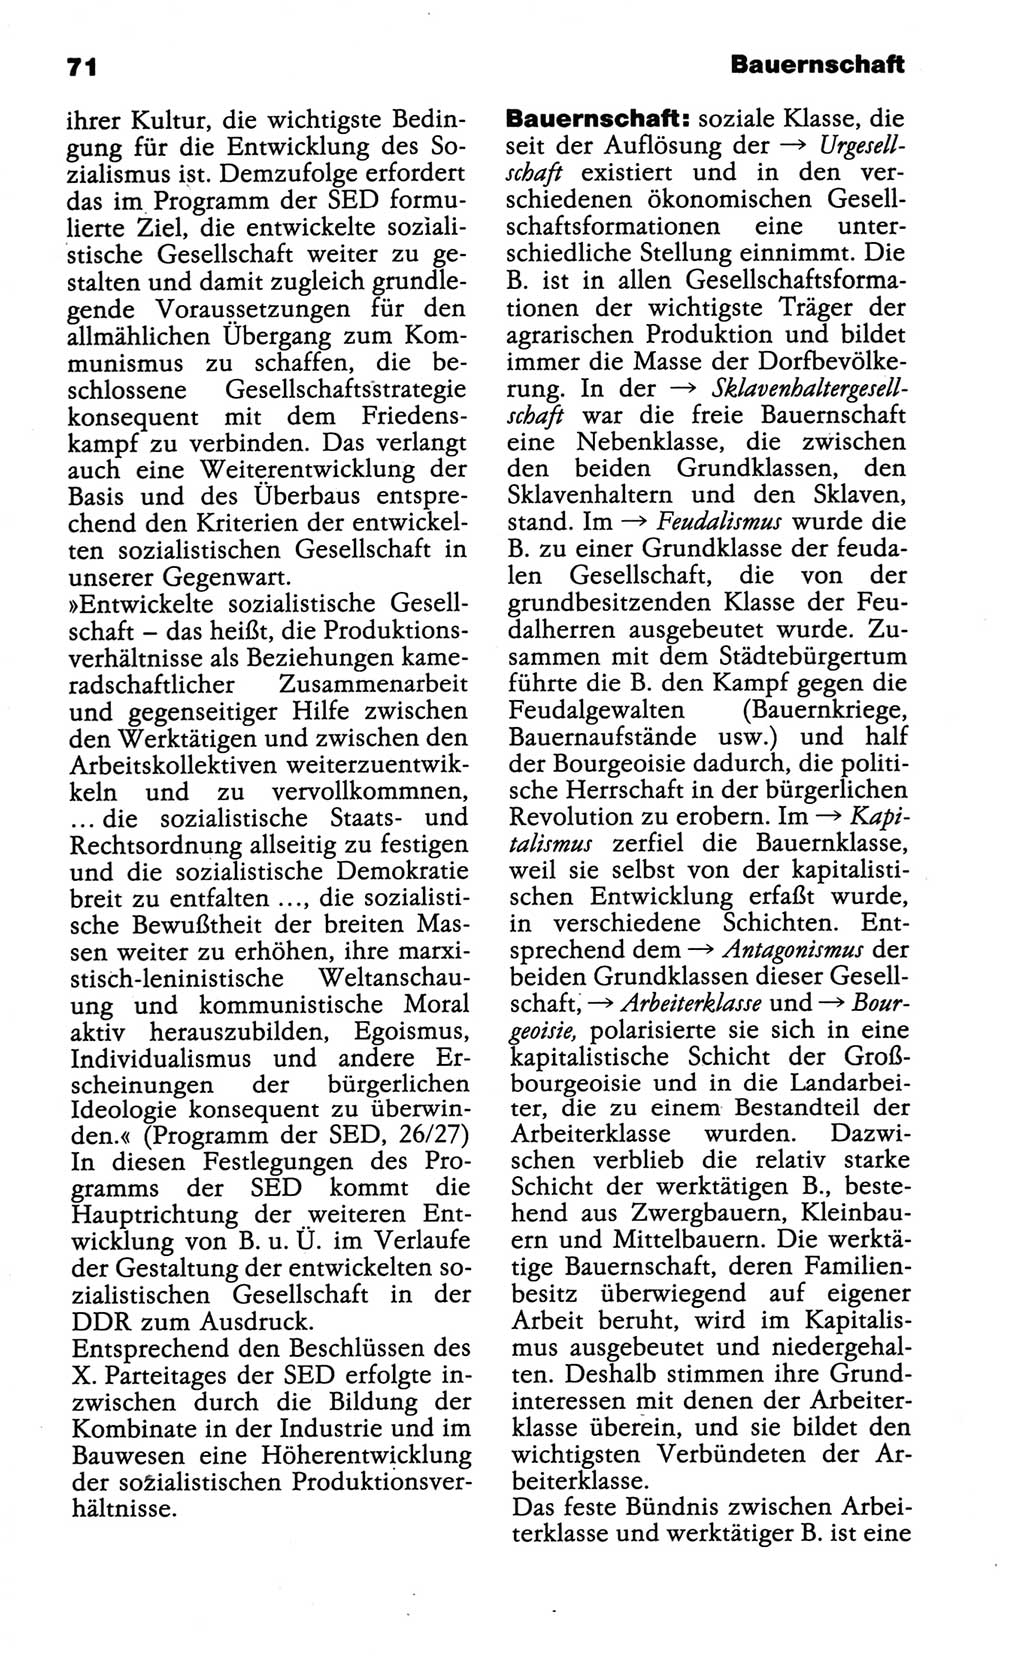 Wörterbuch der marxistisch-leninistischen Philosophie [Deutsche Demokratische Republik (DDR)] 1986, Seite 71 (Wb. ML Phil. DDR 1986, S. 71)